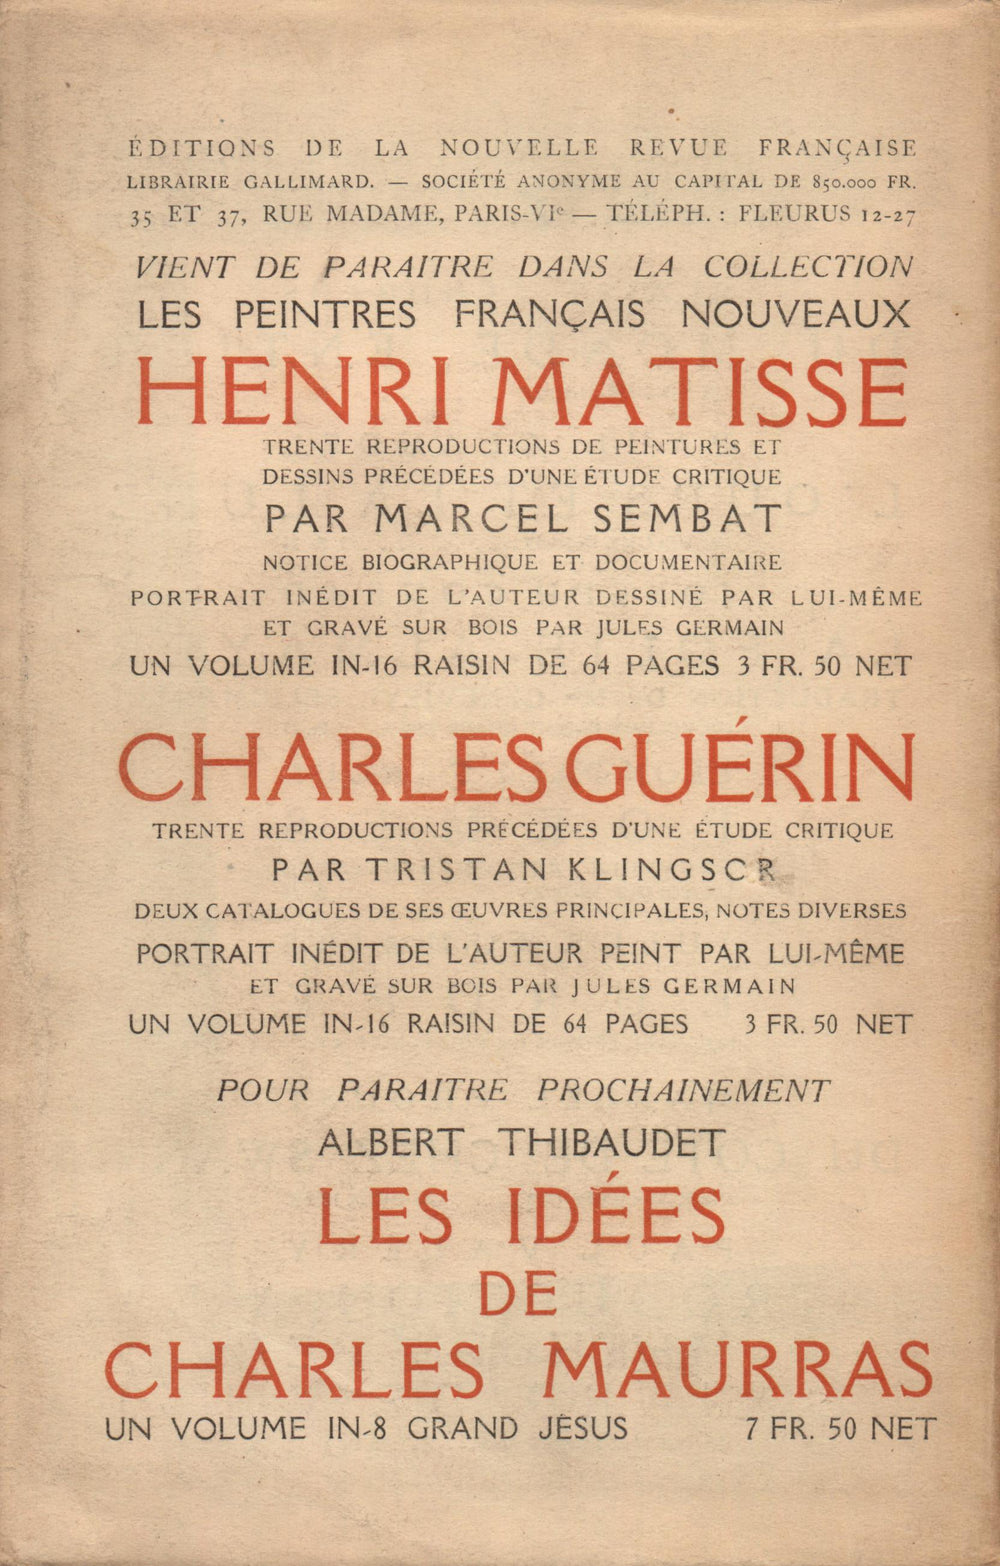 La Nouvelle Revue Française N' 77 (Février 1920)